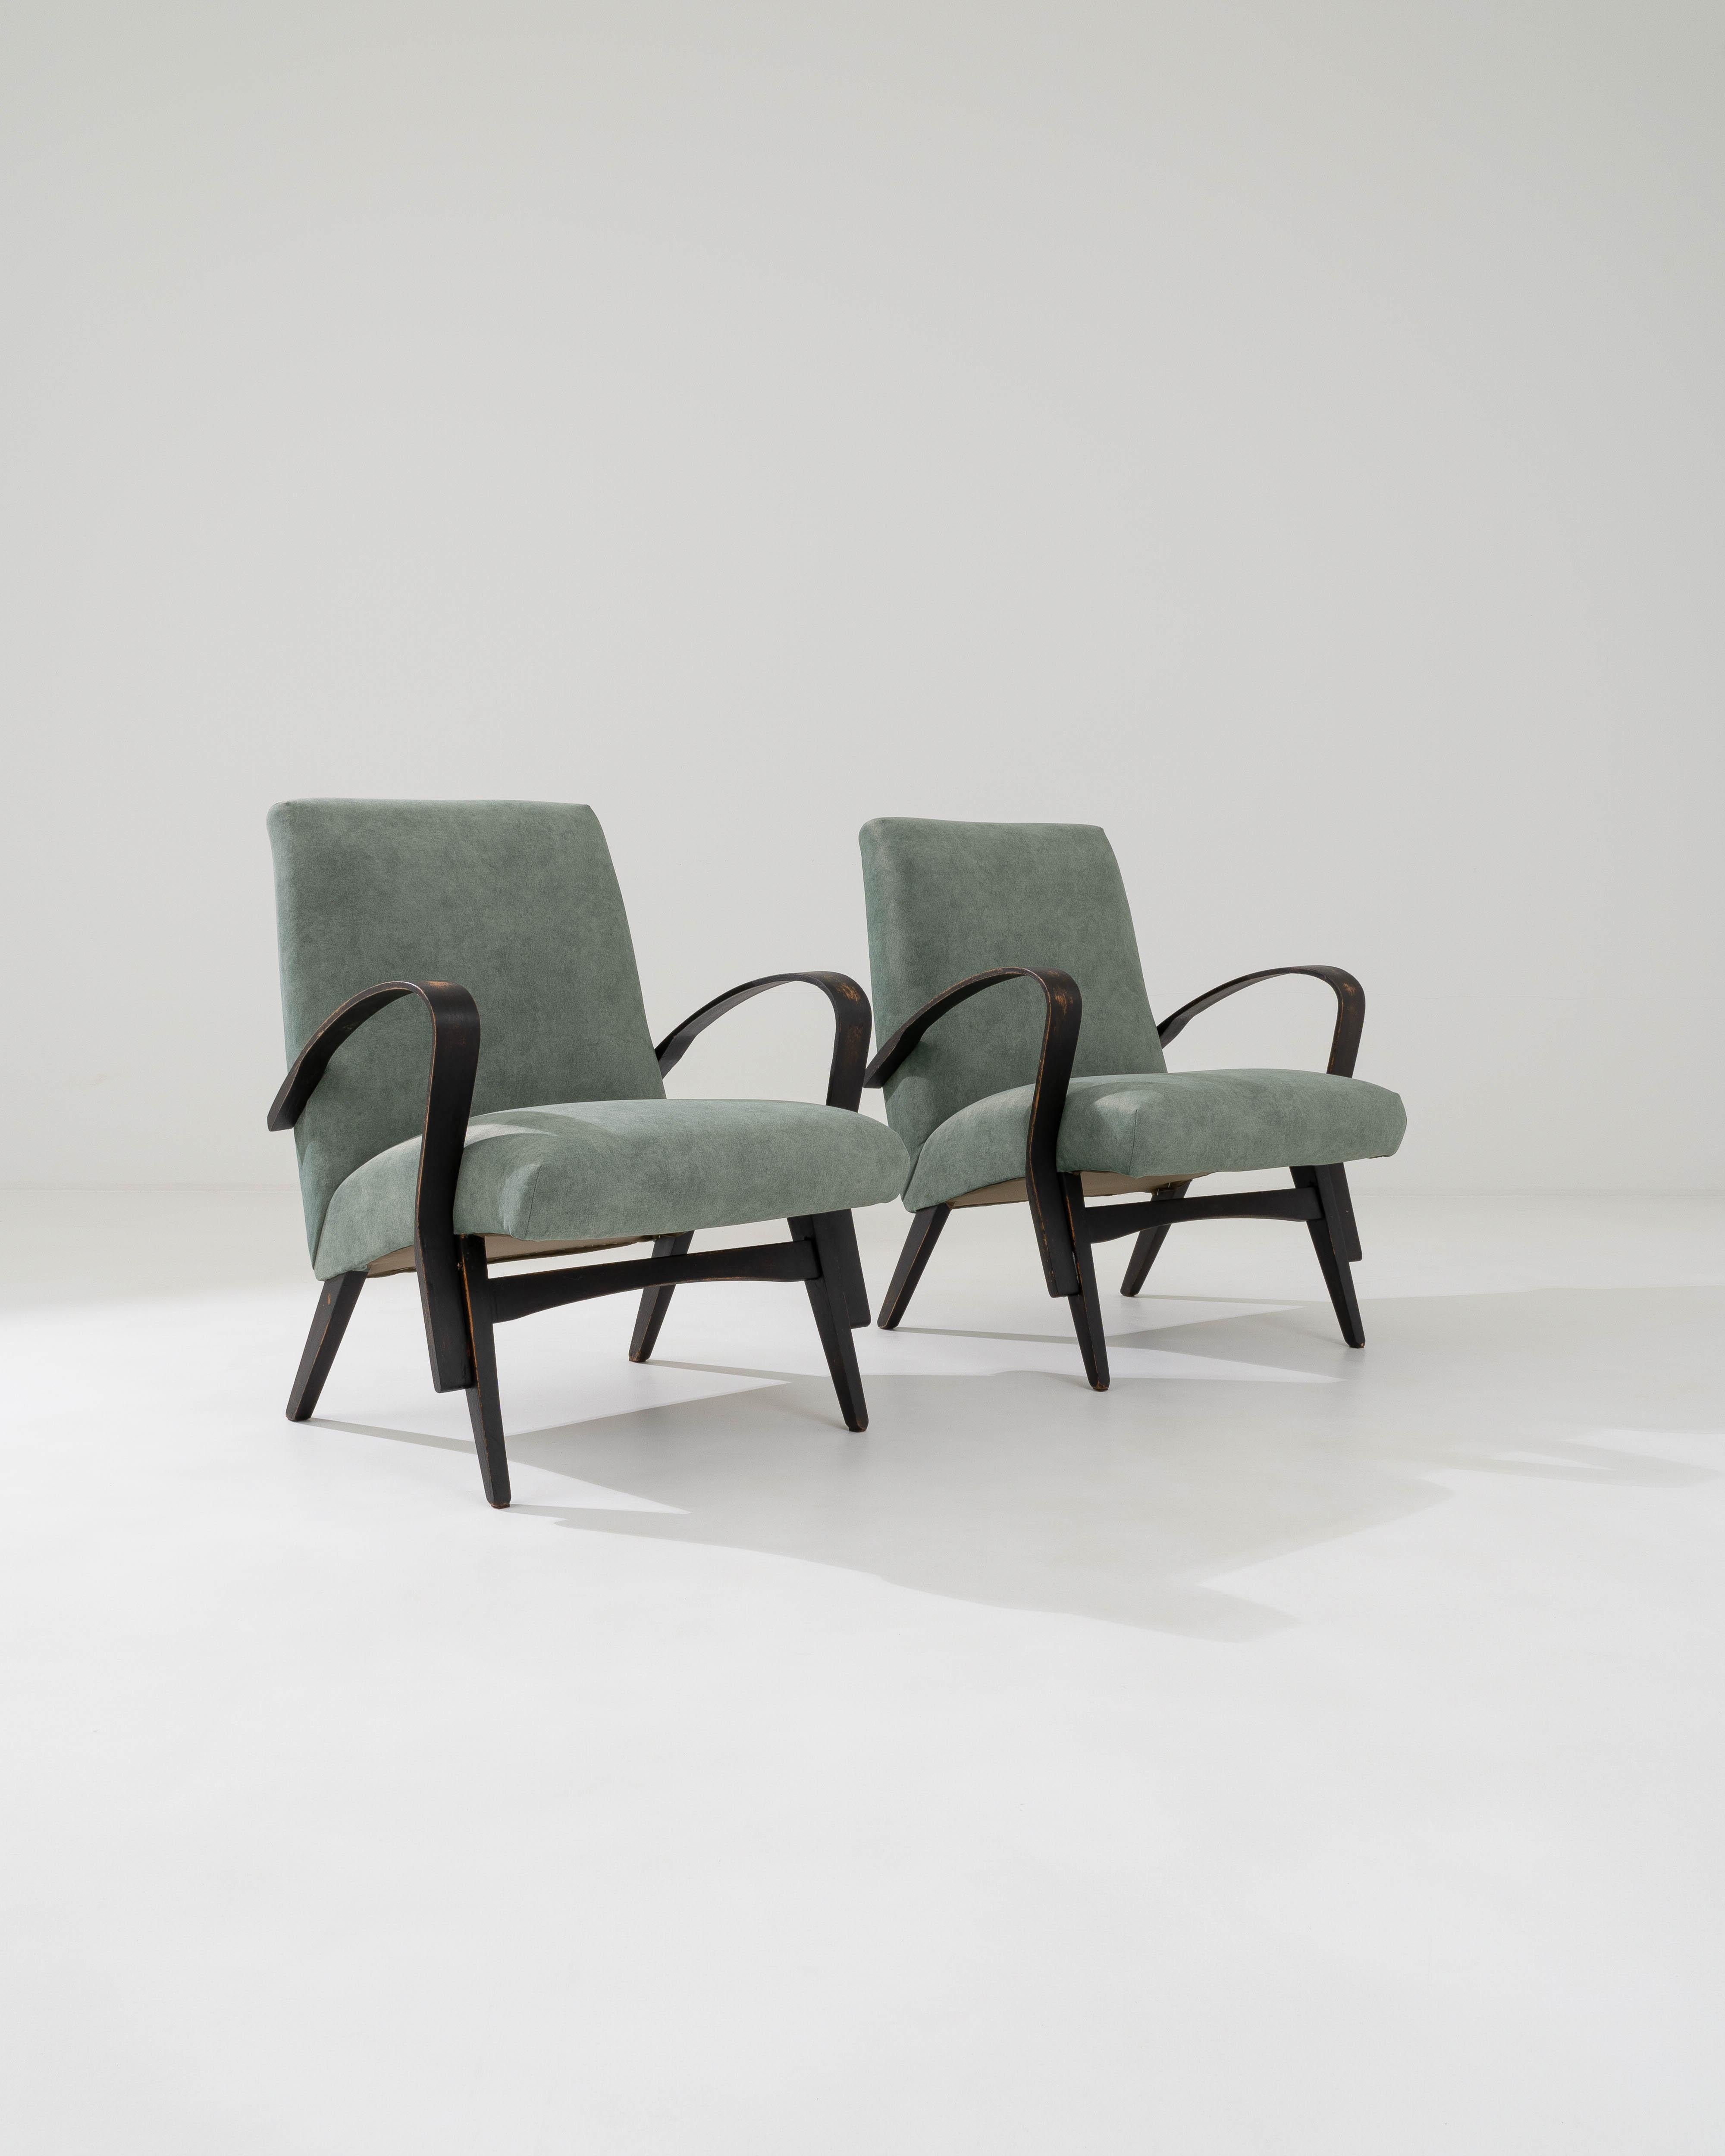 Diese Sessel, die sich durch ihre klaren Linien und ihre minimalistische Silhouette auszeichnen, wurden in den 1960er Jahren von der berühmten tschechischen Marke hergestellt. Die glatten, konturierten Oberflächen der Bugholzarmlehnen treten in